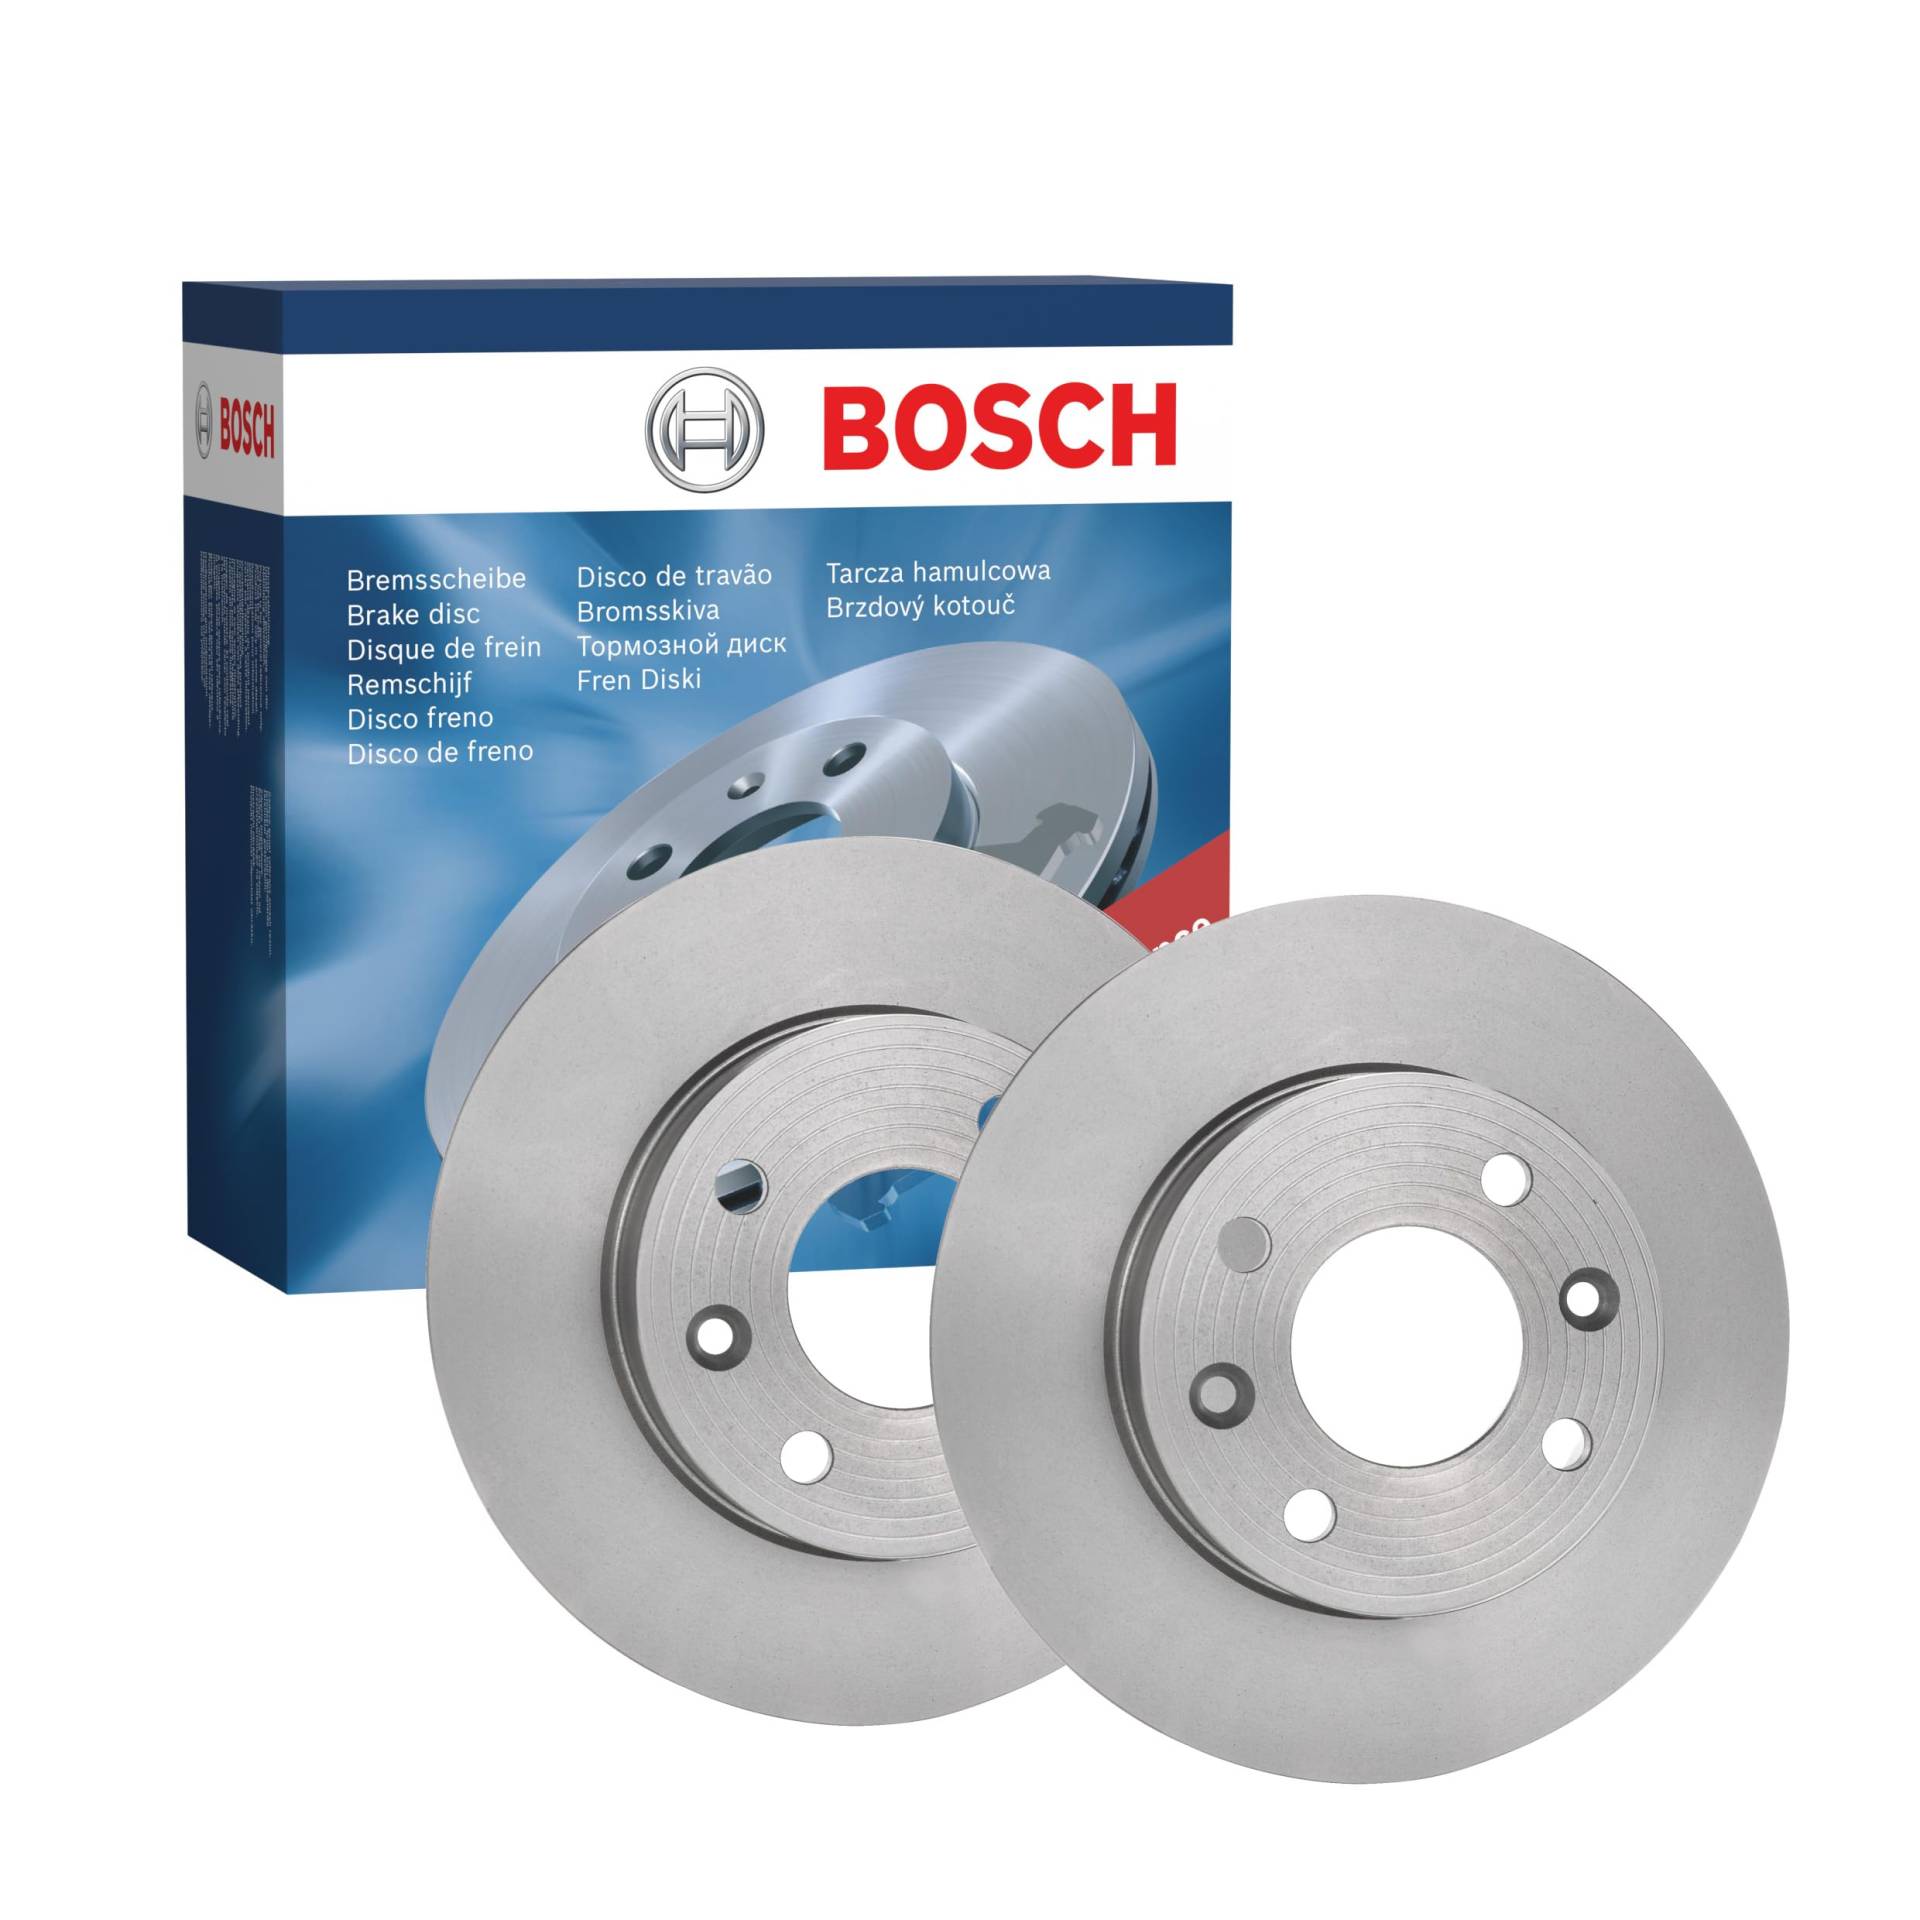 Bosch BD94 Bremsscheiben - ECE-R90 Zertifizierung - zwei Bremsscheiben pro Set von Bosch Automotive